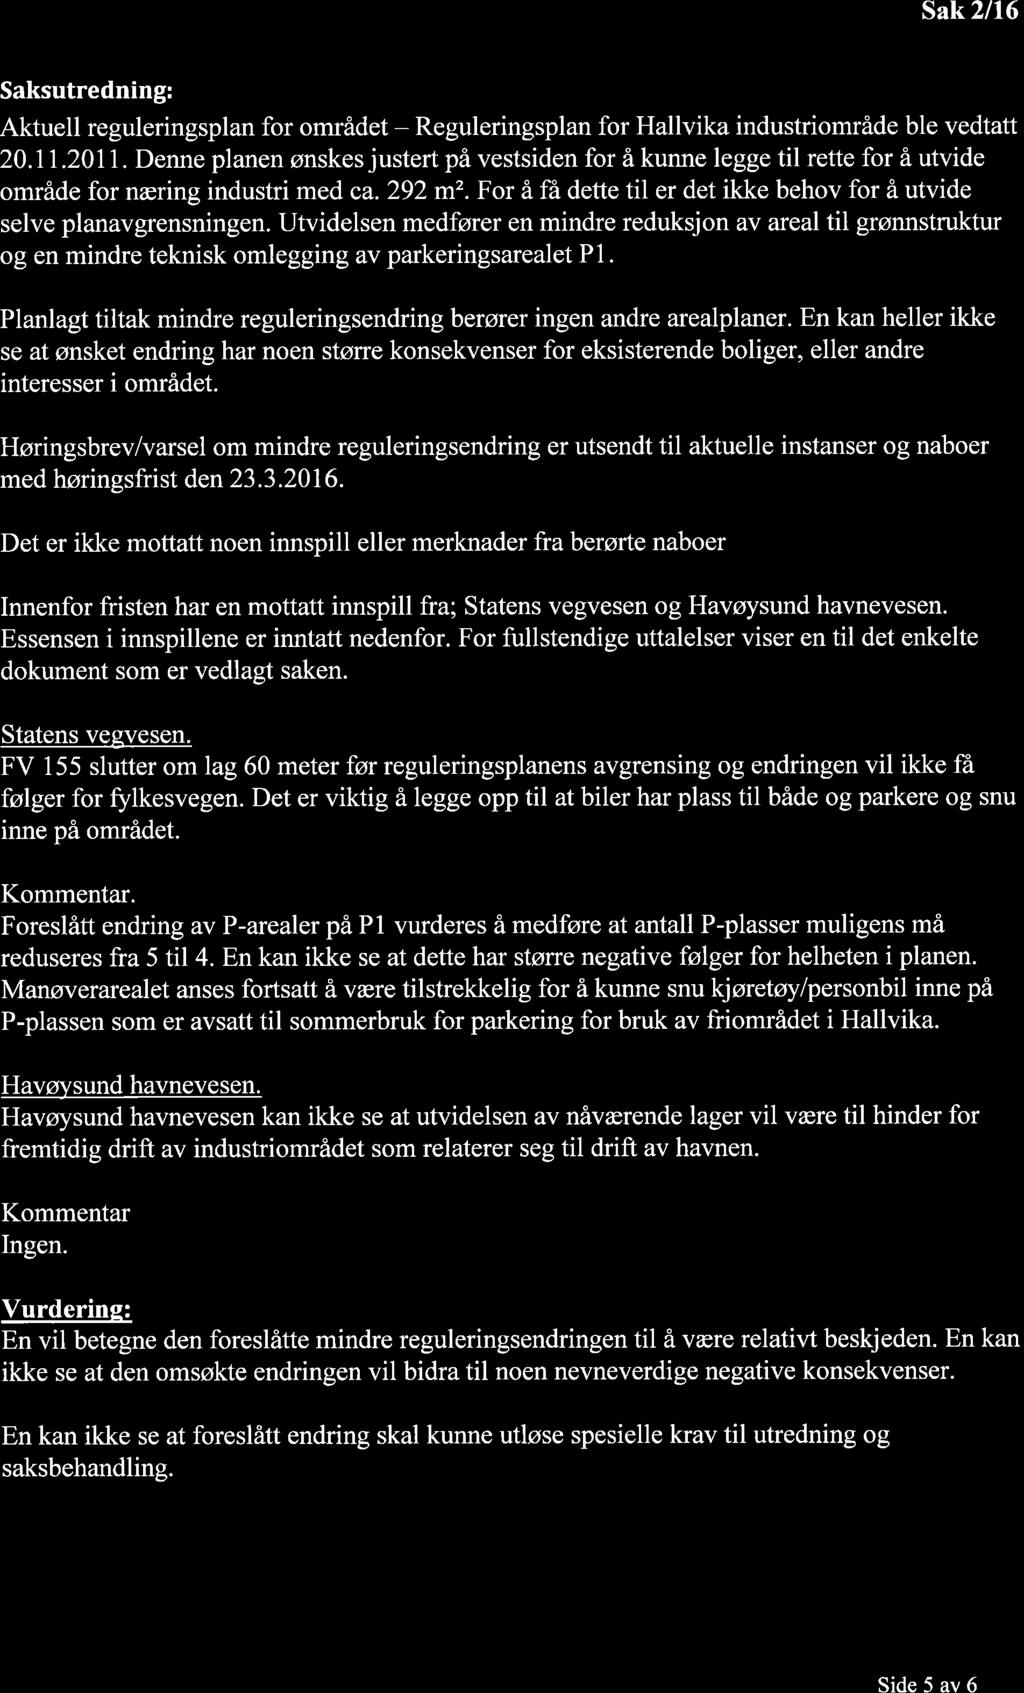 Sak 2/16 Saksuredning: Akuell reguleringsplan for område - Reguleringsplan for Hallvika indusriområde ble veda 20.11.201.